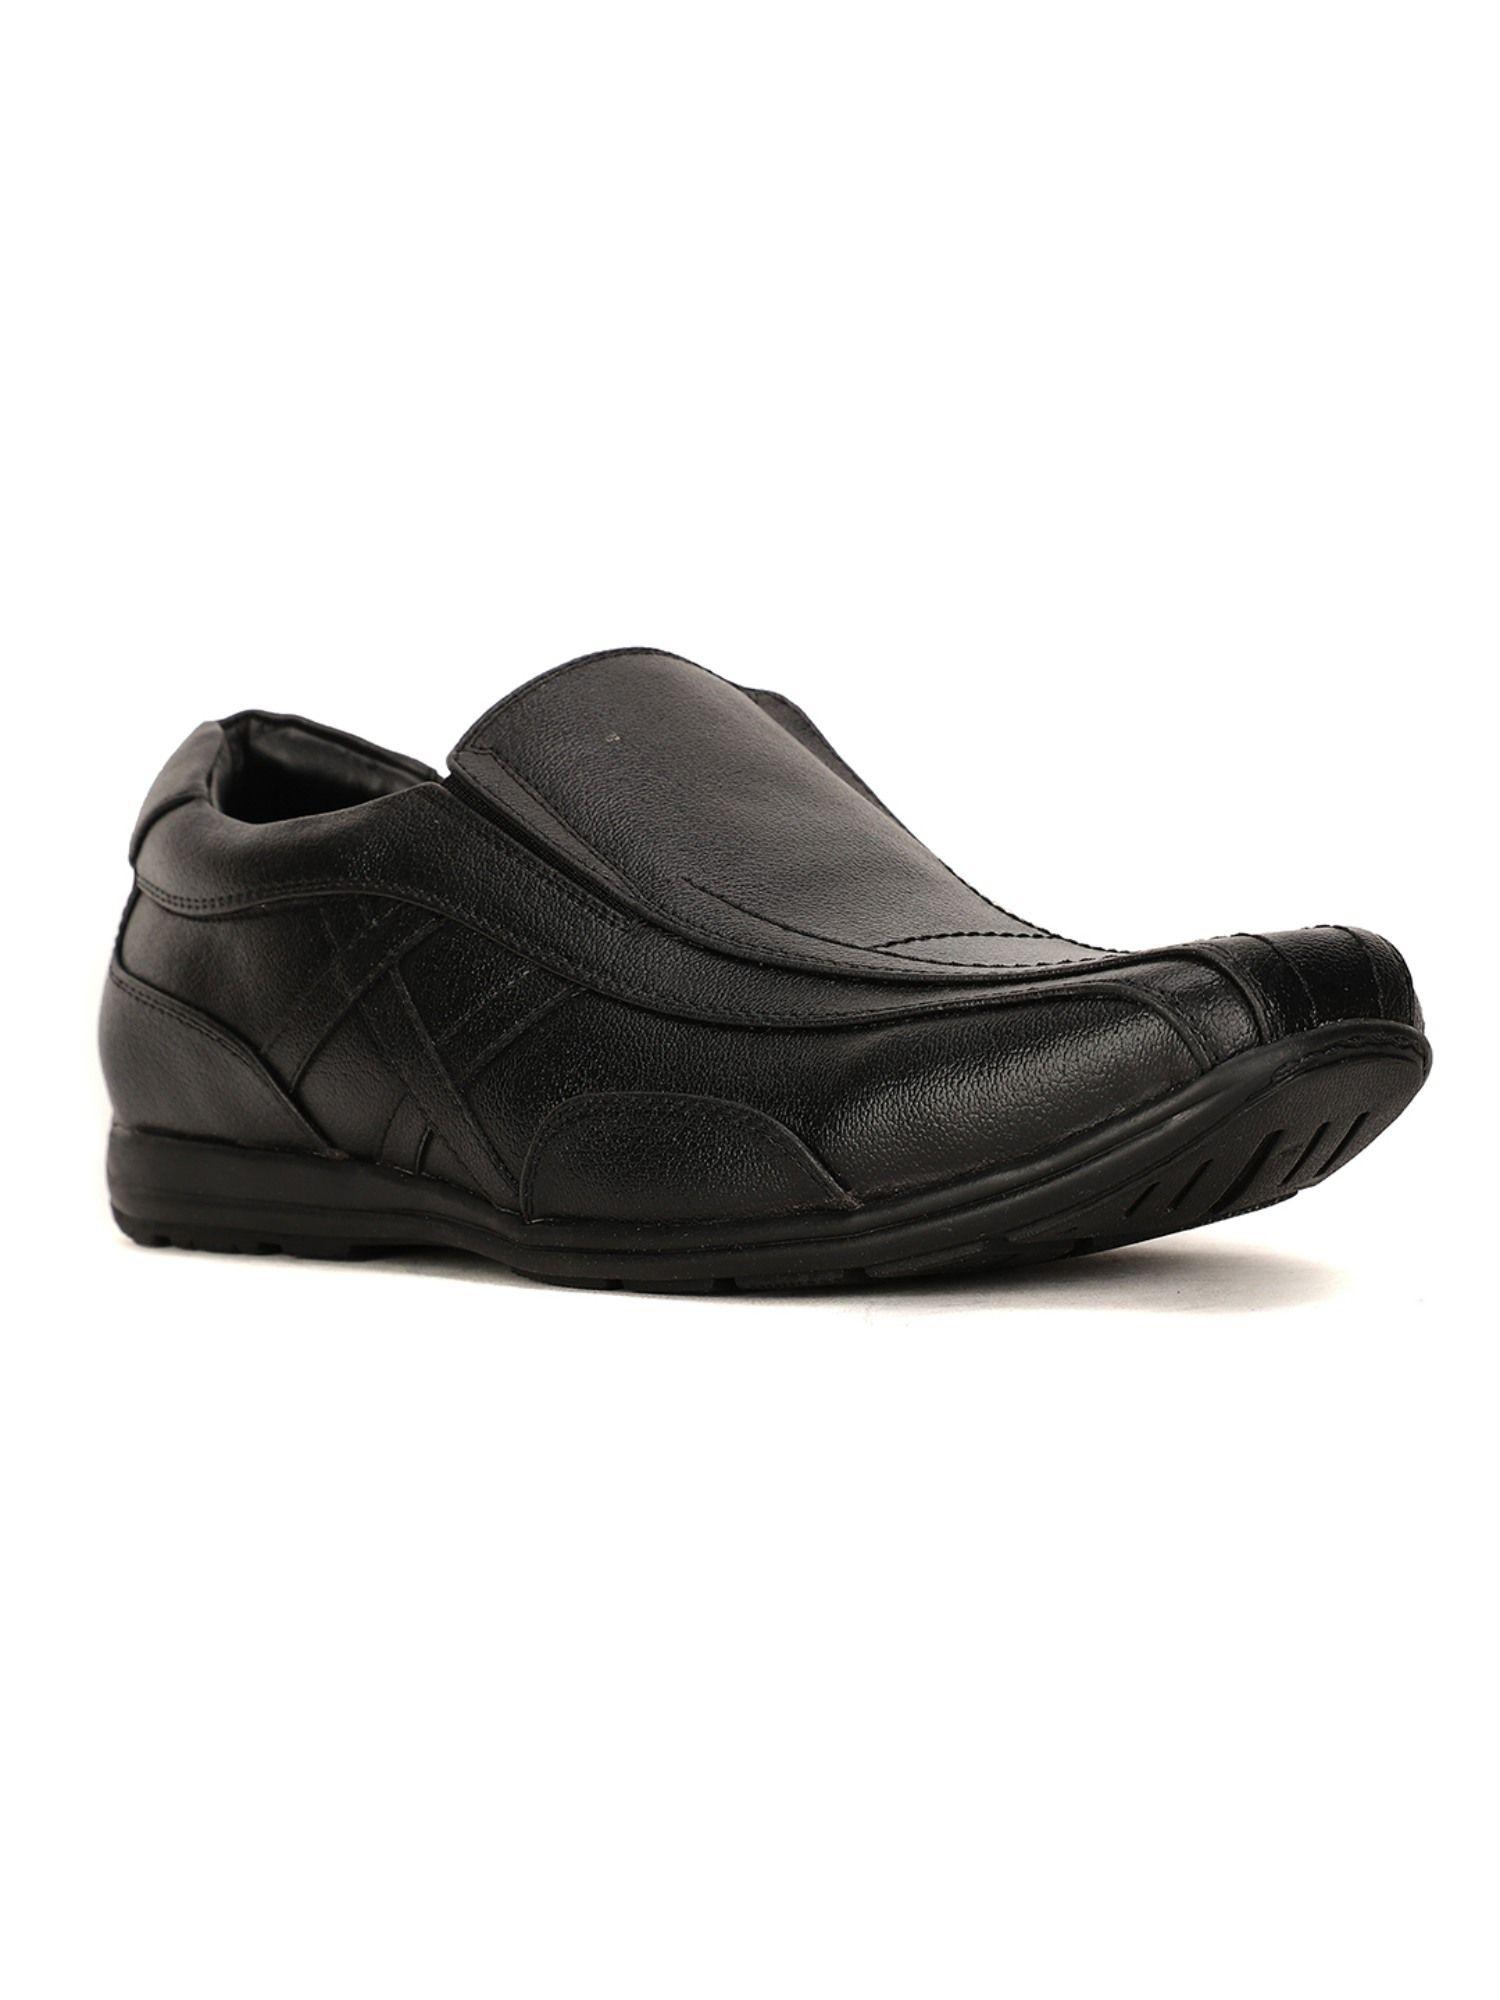 men-black-slip-on-formal-shoes